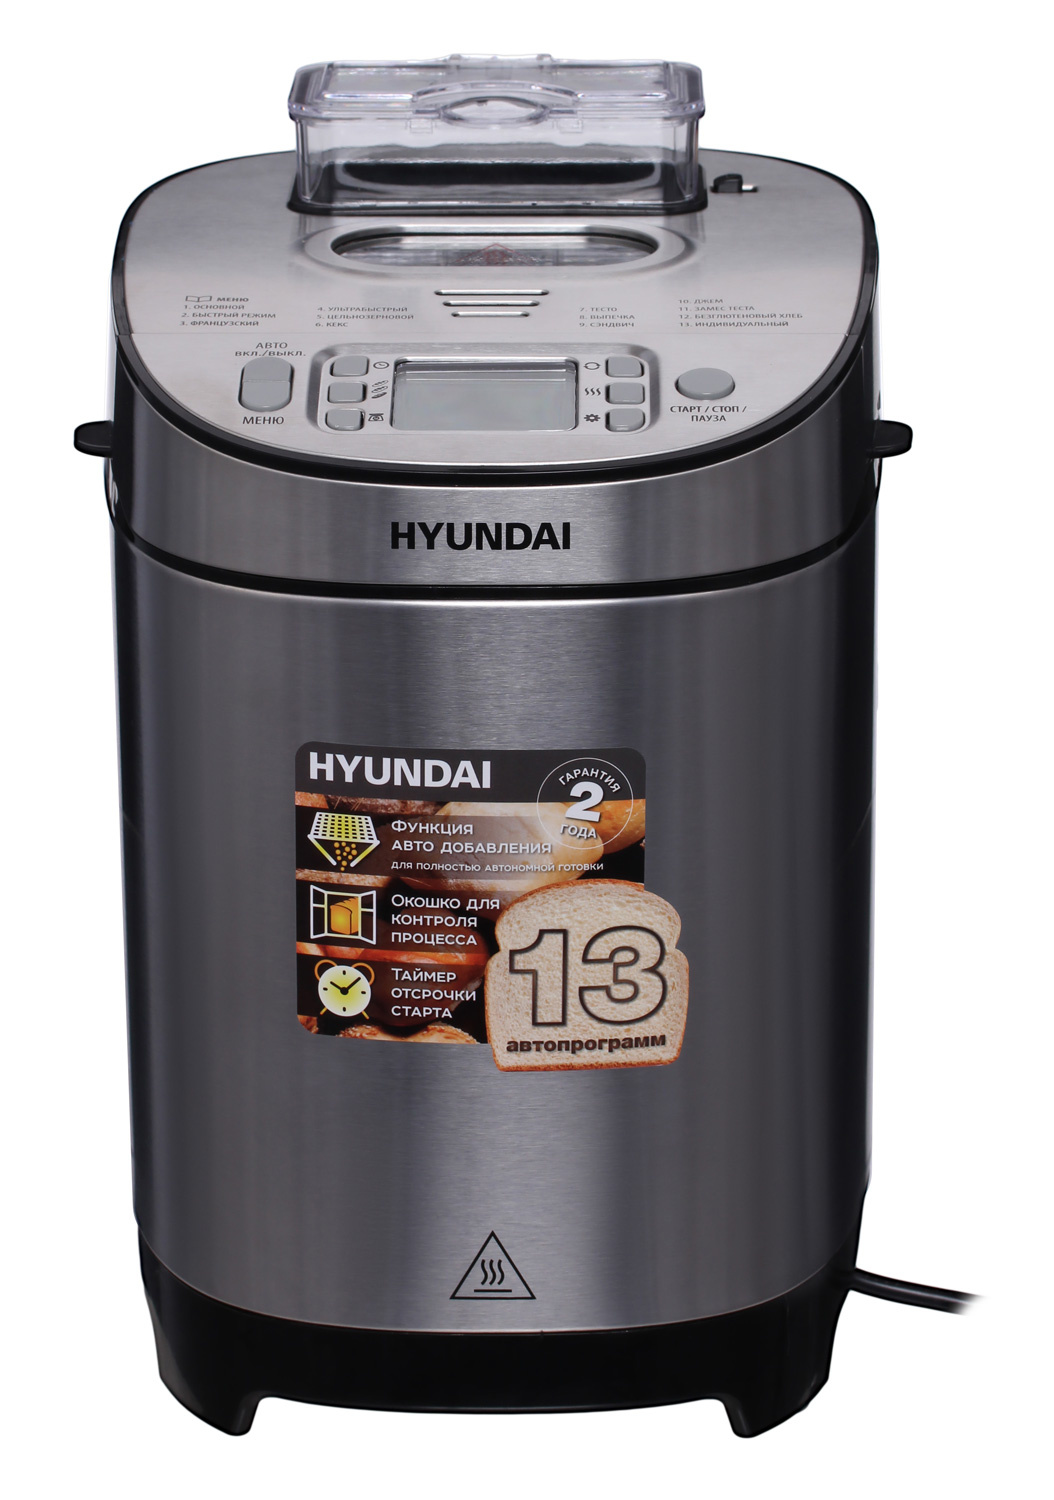 Хлебопечь Hyundai HYBM-M0313G 600Вт серебристый/черный